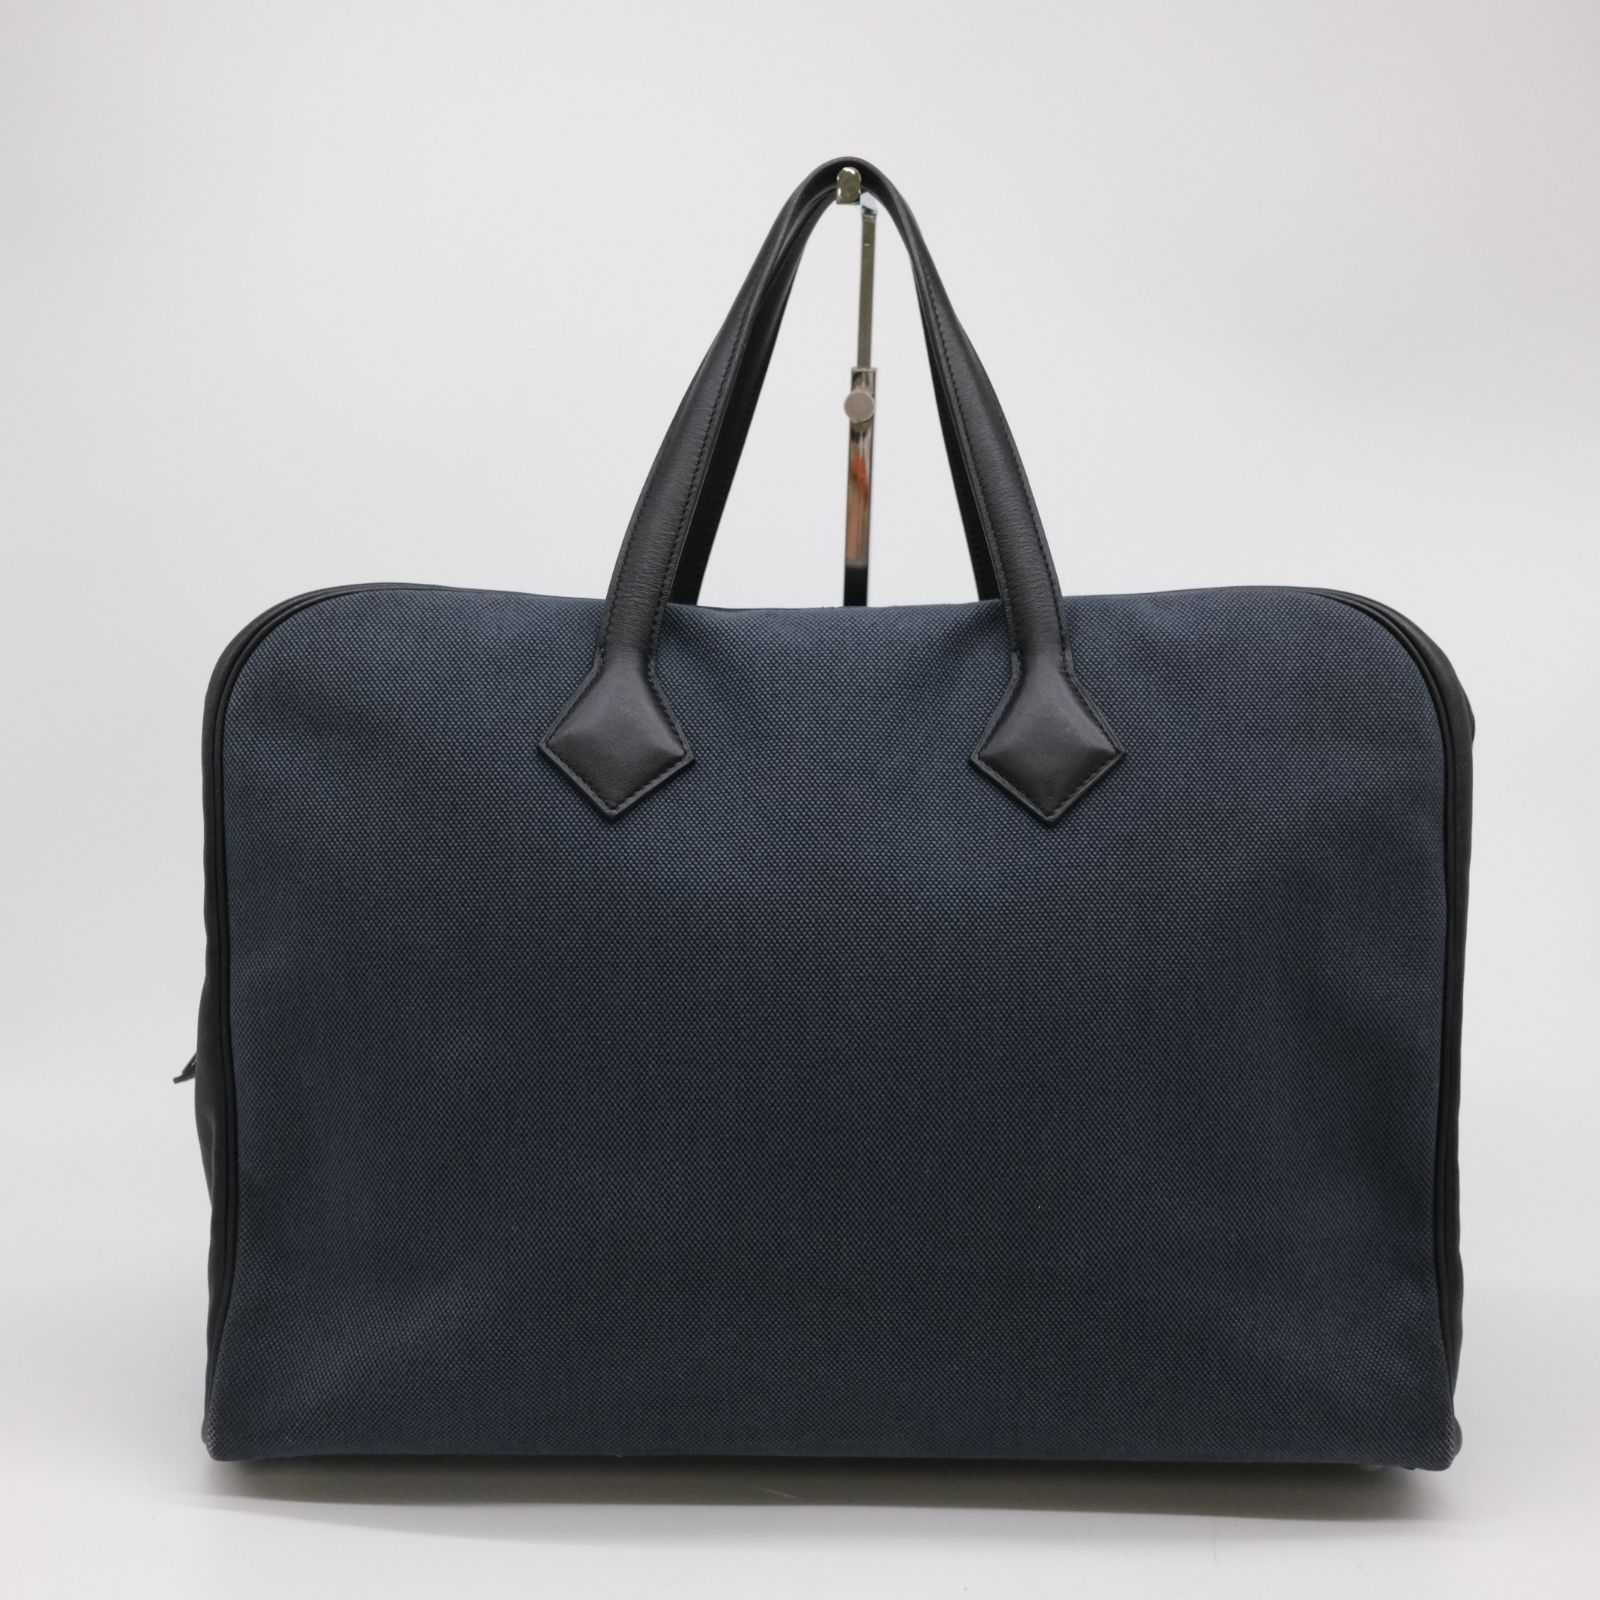 新作コレクション通販 美品 ヴィクトリアⅡ メンズビジネスバッグ 黒 ビジネスバッグ